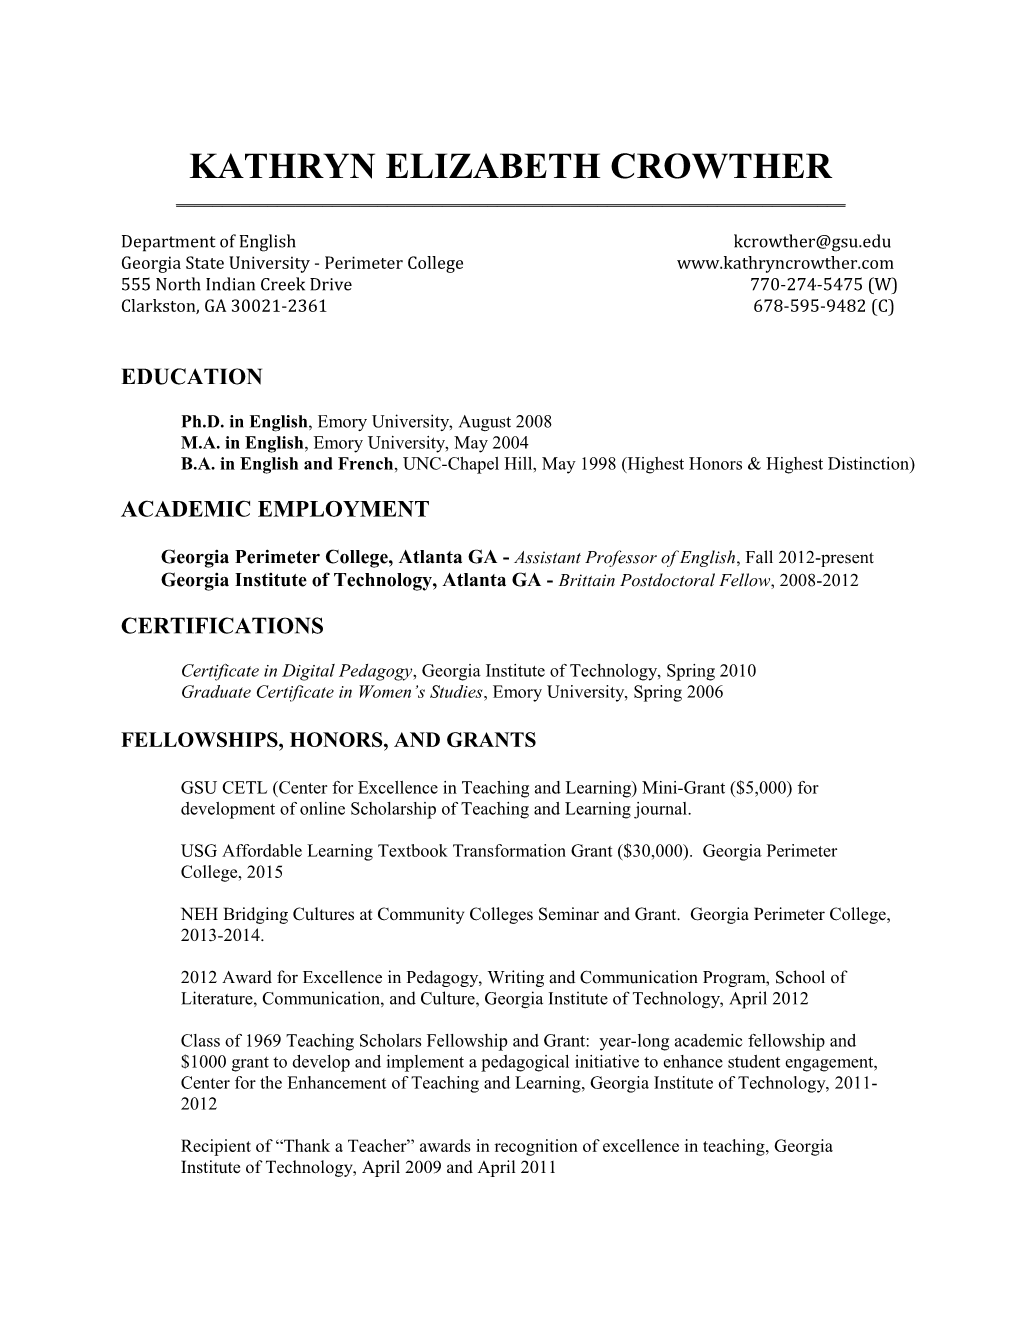 Kathryn Elizabeth Crowther